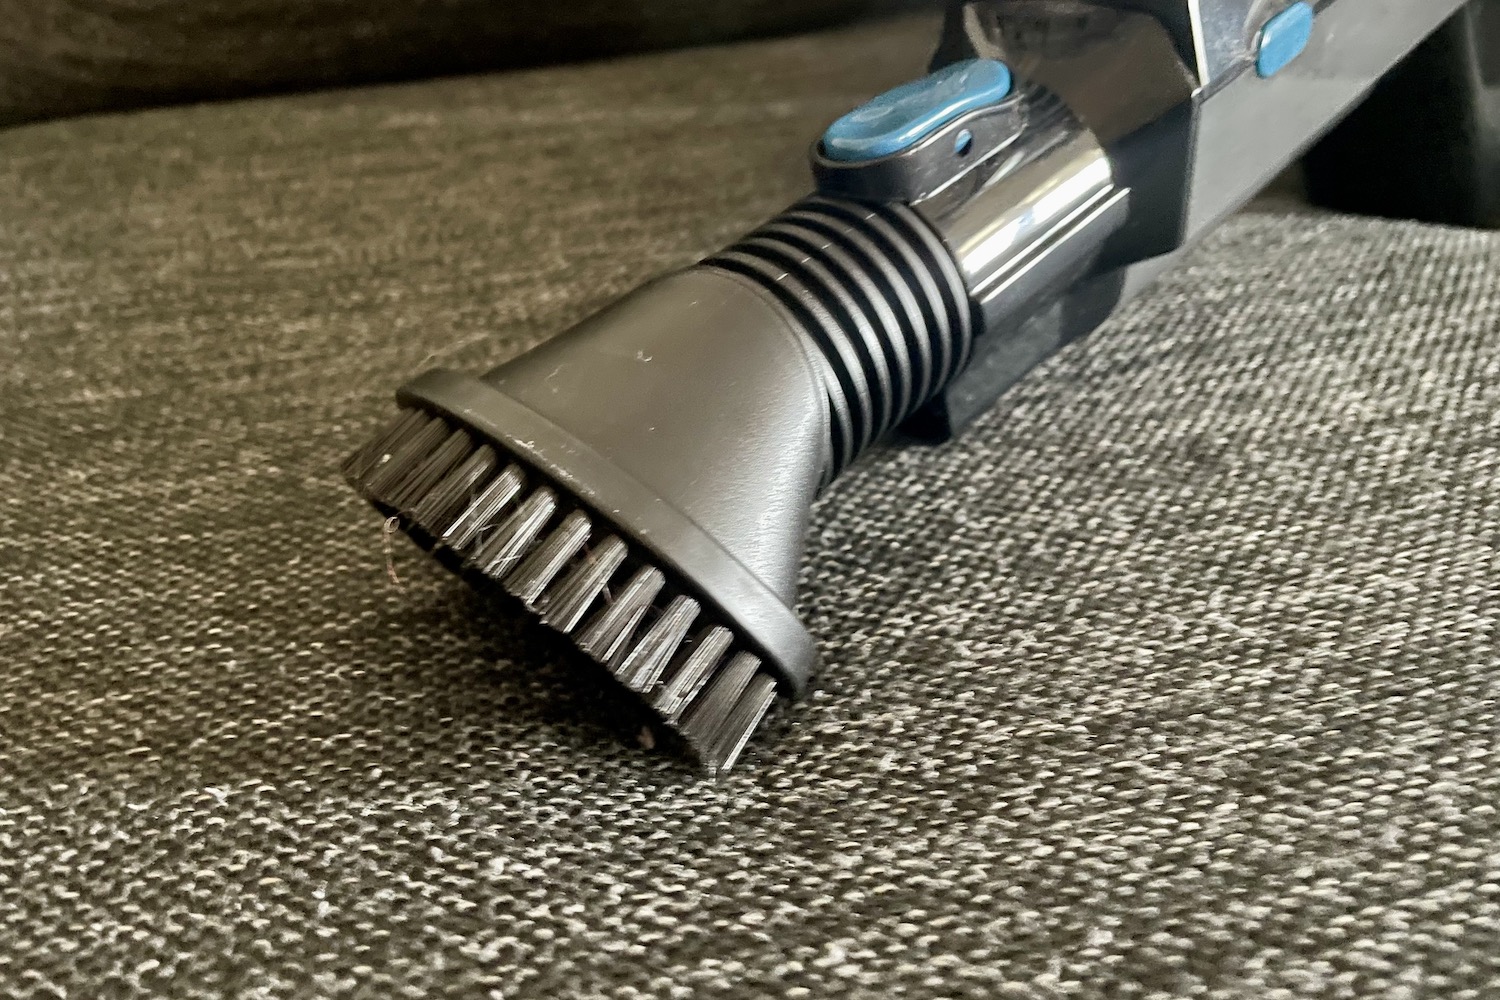 Introducing Proscenic P11 Cordless Vacuum Cleaner 